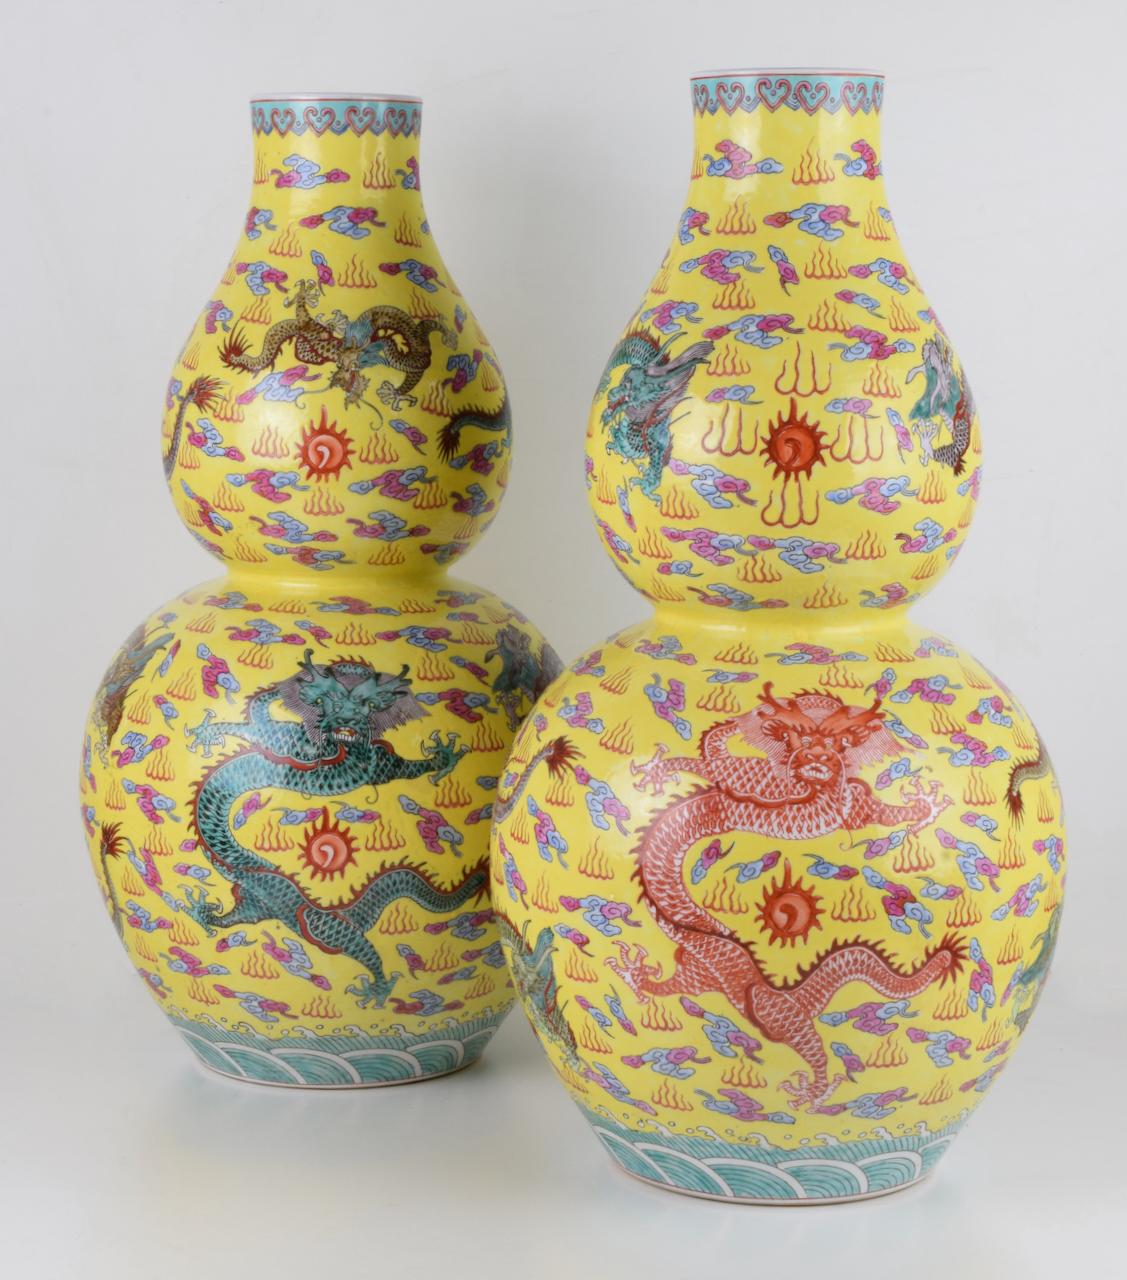 China, 20. Jahrhundert.
Porzellan mit gelbem Hintergrund und Drachendekoration
Höhe cm 55.